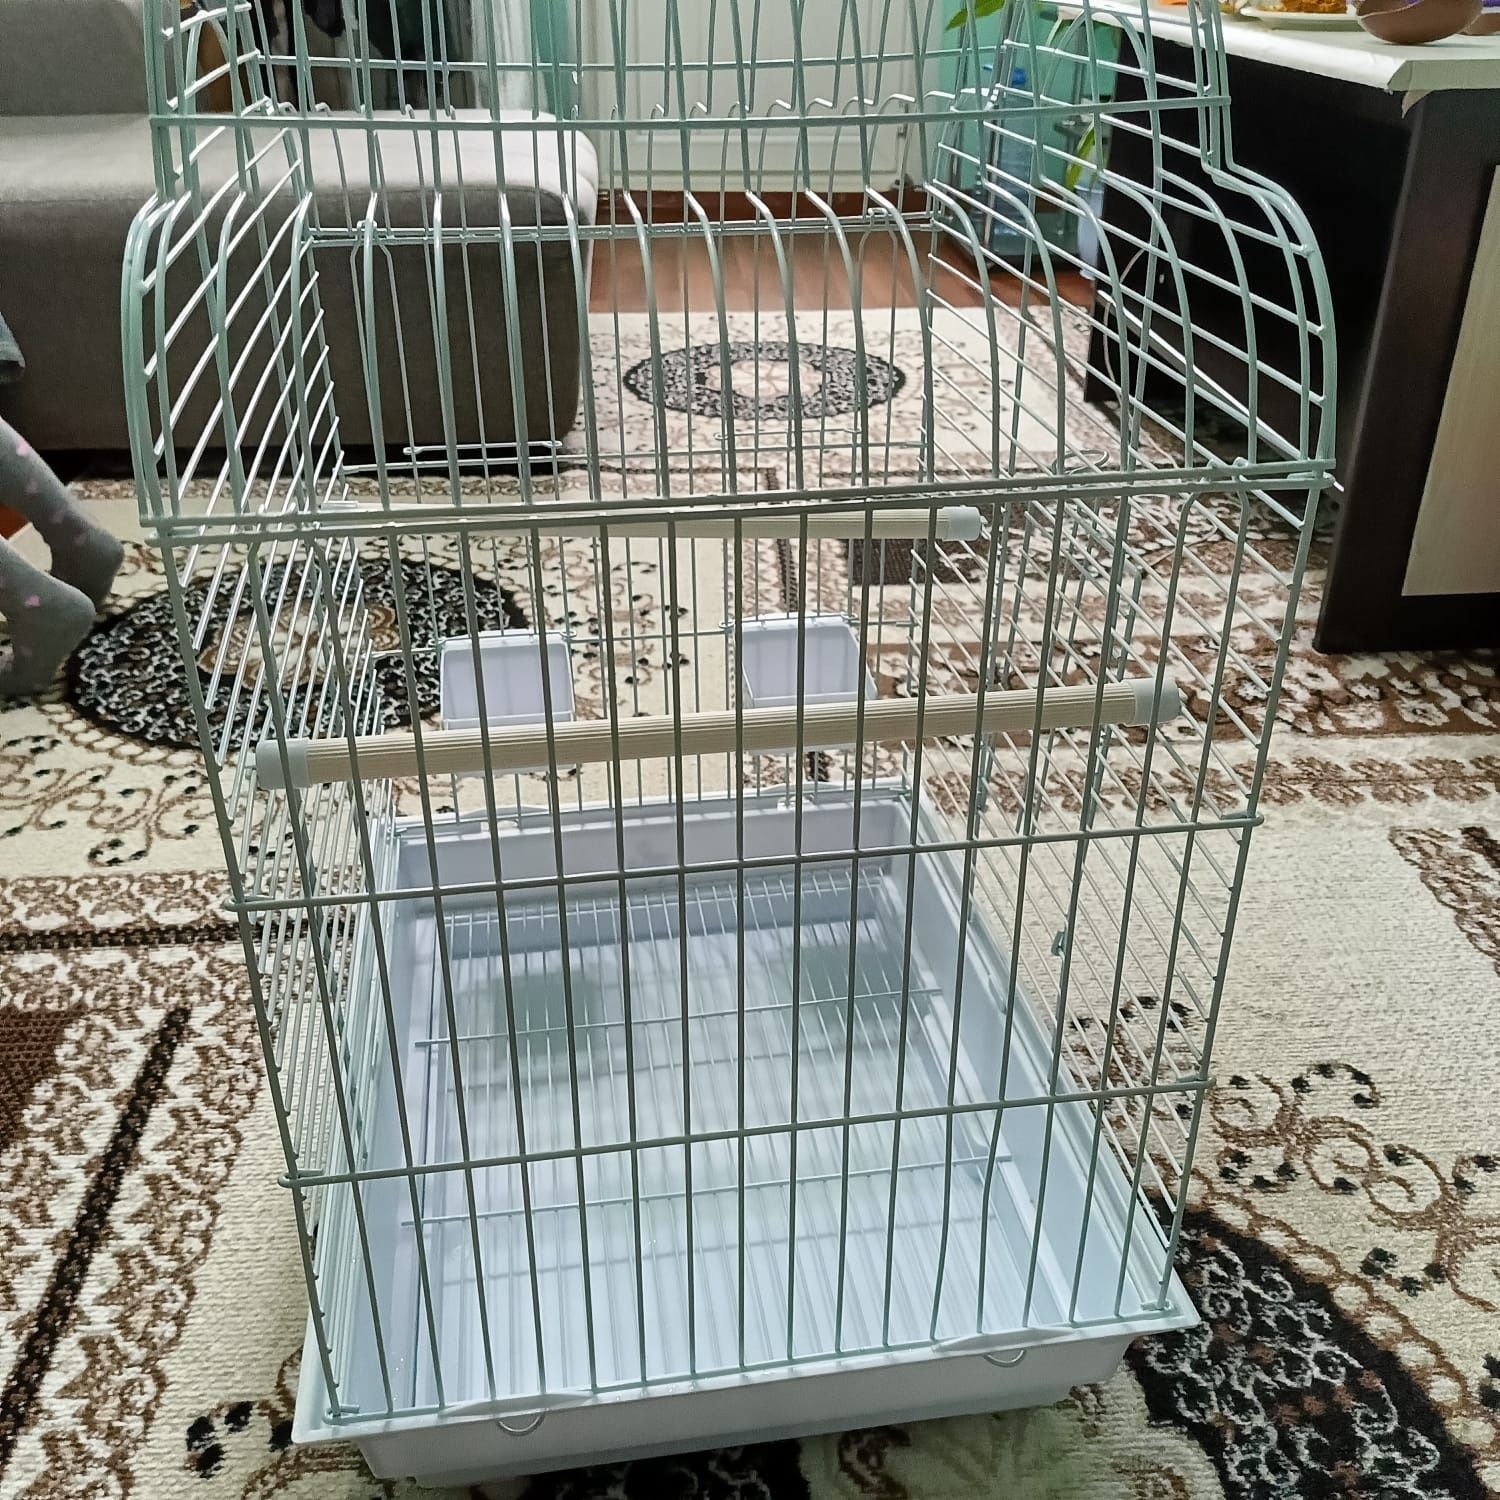 Продам клетку для попугаев